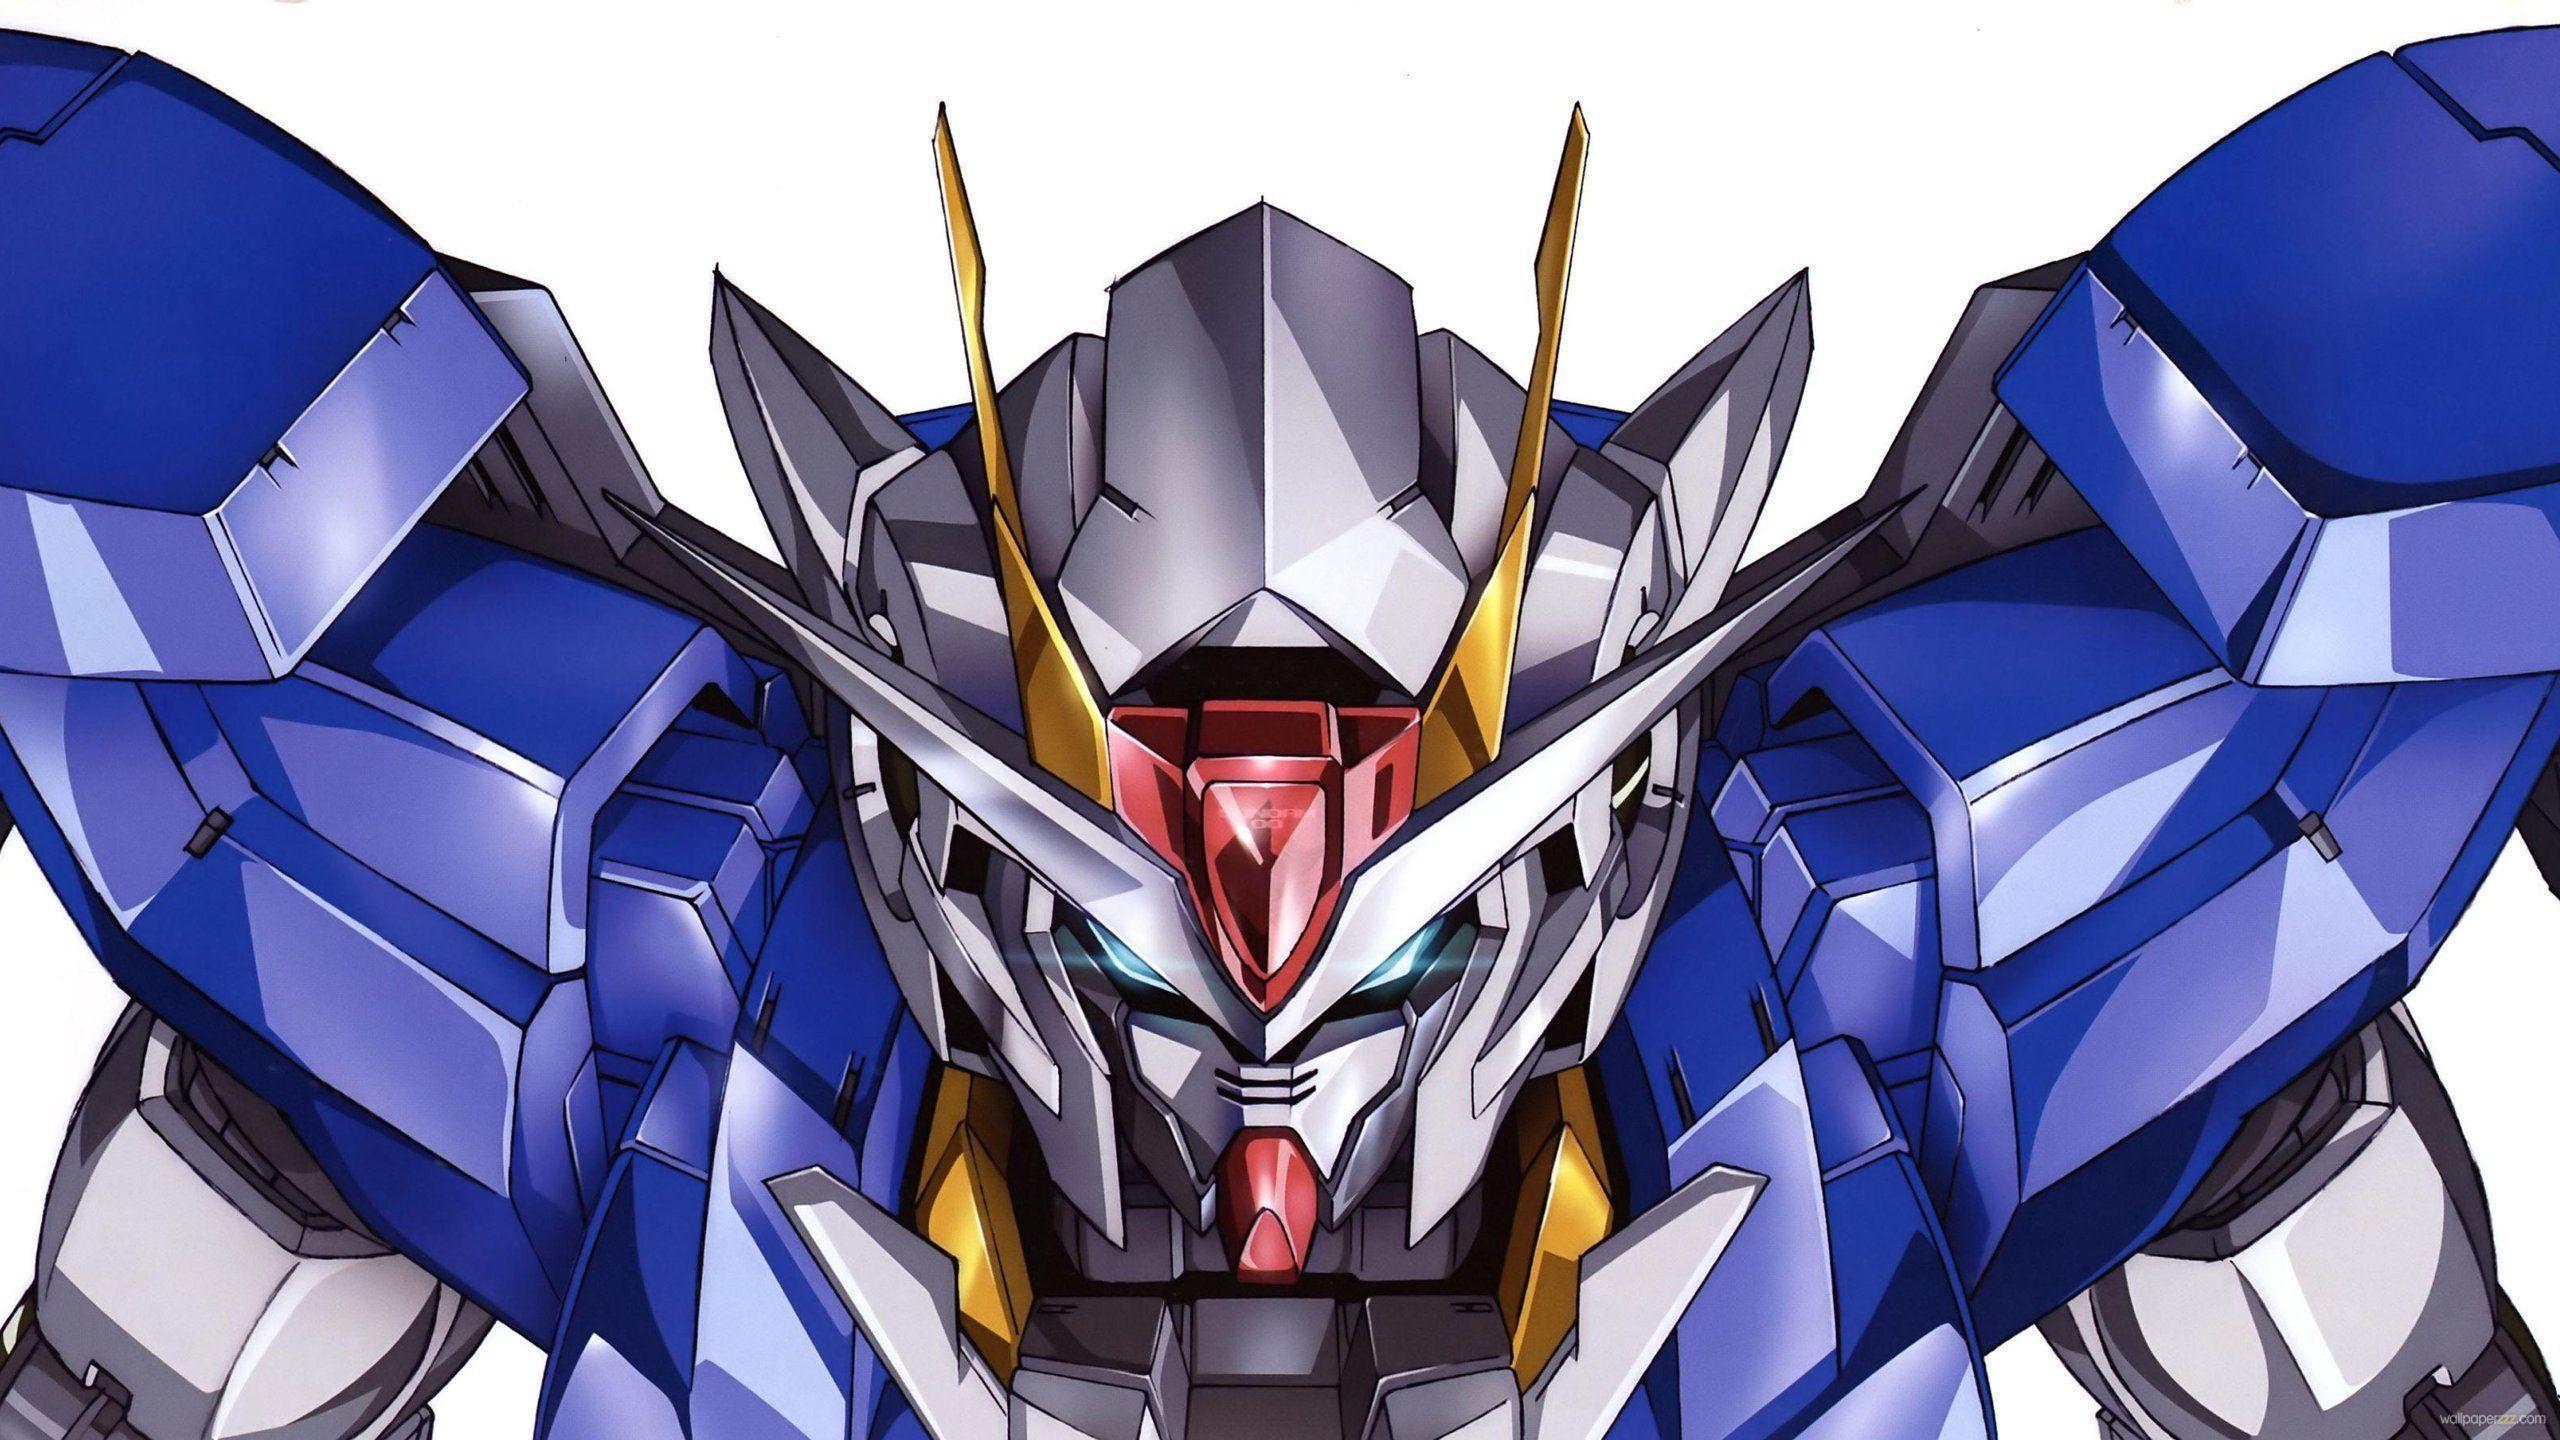 2560 x 1440 · jpeg - Gundam HD Wallpapers - Wallpaper Cave